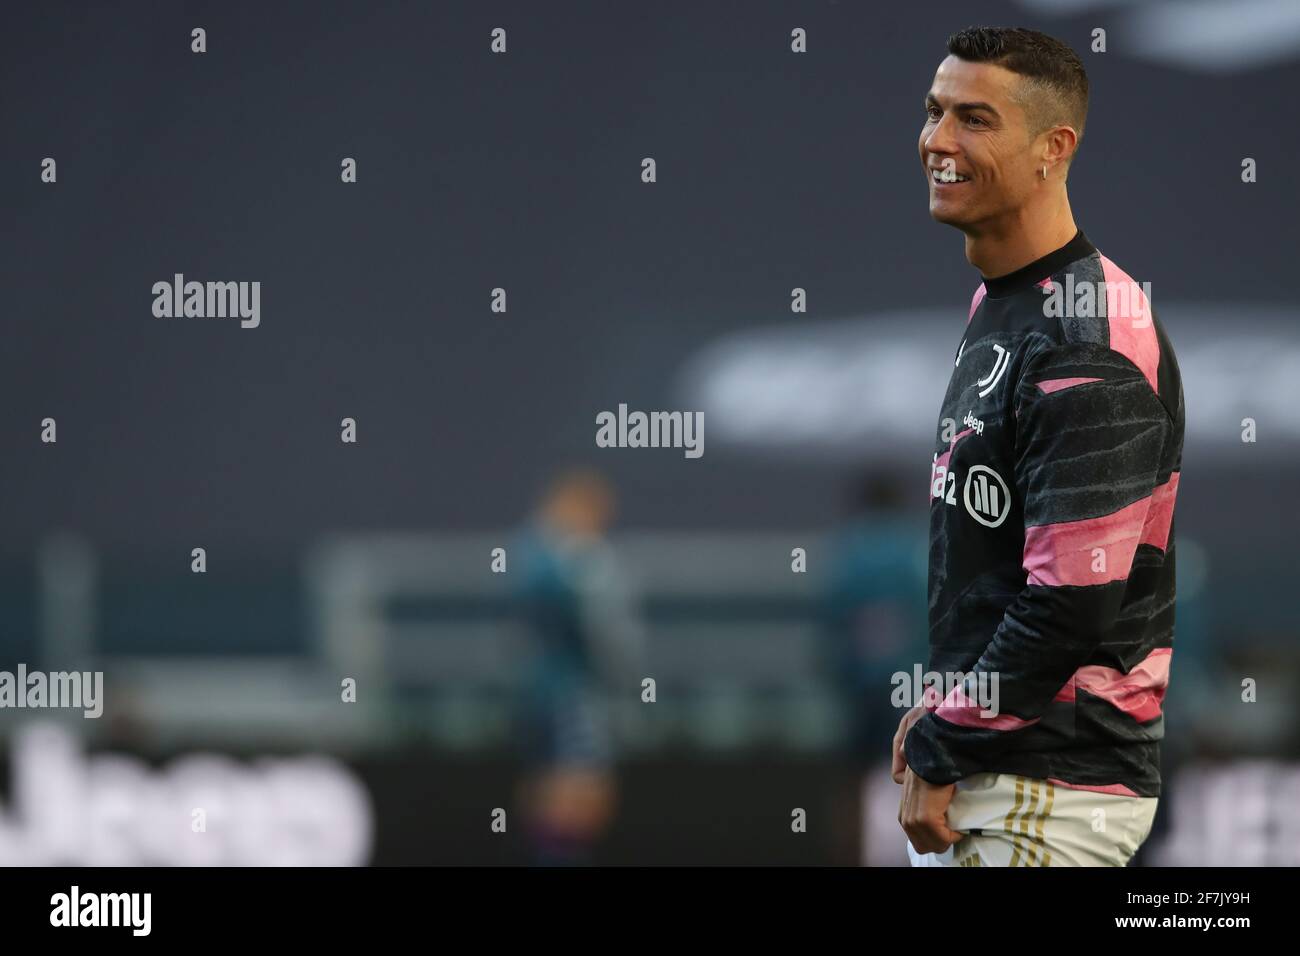 Turin, Italien, 7. April 2021.Cristiano Ronaldo von Juventus lächelt während des Warm-Up vor dem Spiel der Serie A im Allianz Stadium, Turin. Bildnachweis sollte lauten: Jonathan Moscrop / Sportimage Kredit: Sportimage/Alamy Live Nachrichten Kredit: Sportimage/Alamy Live Nachrichten Stockfoto